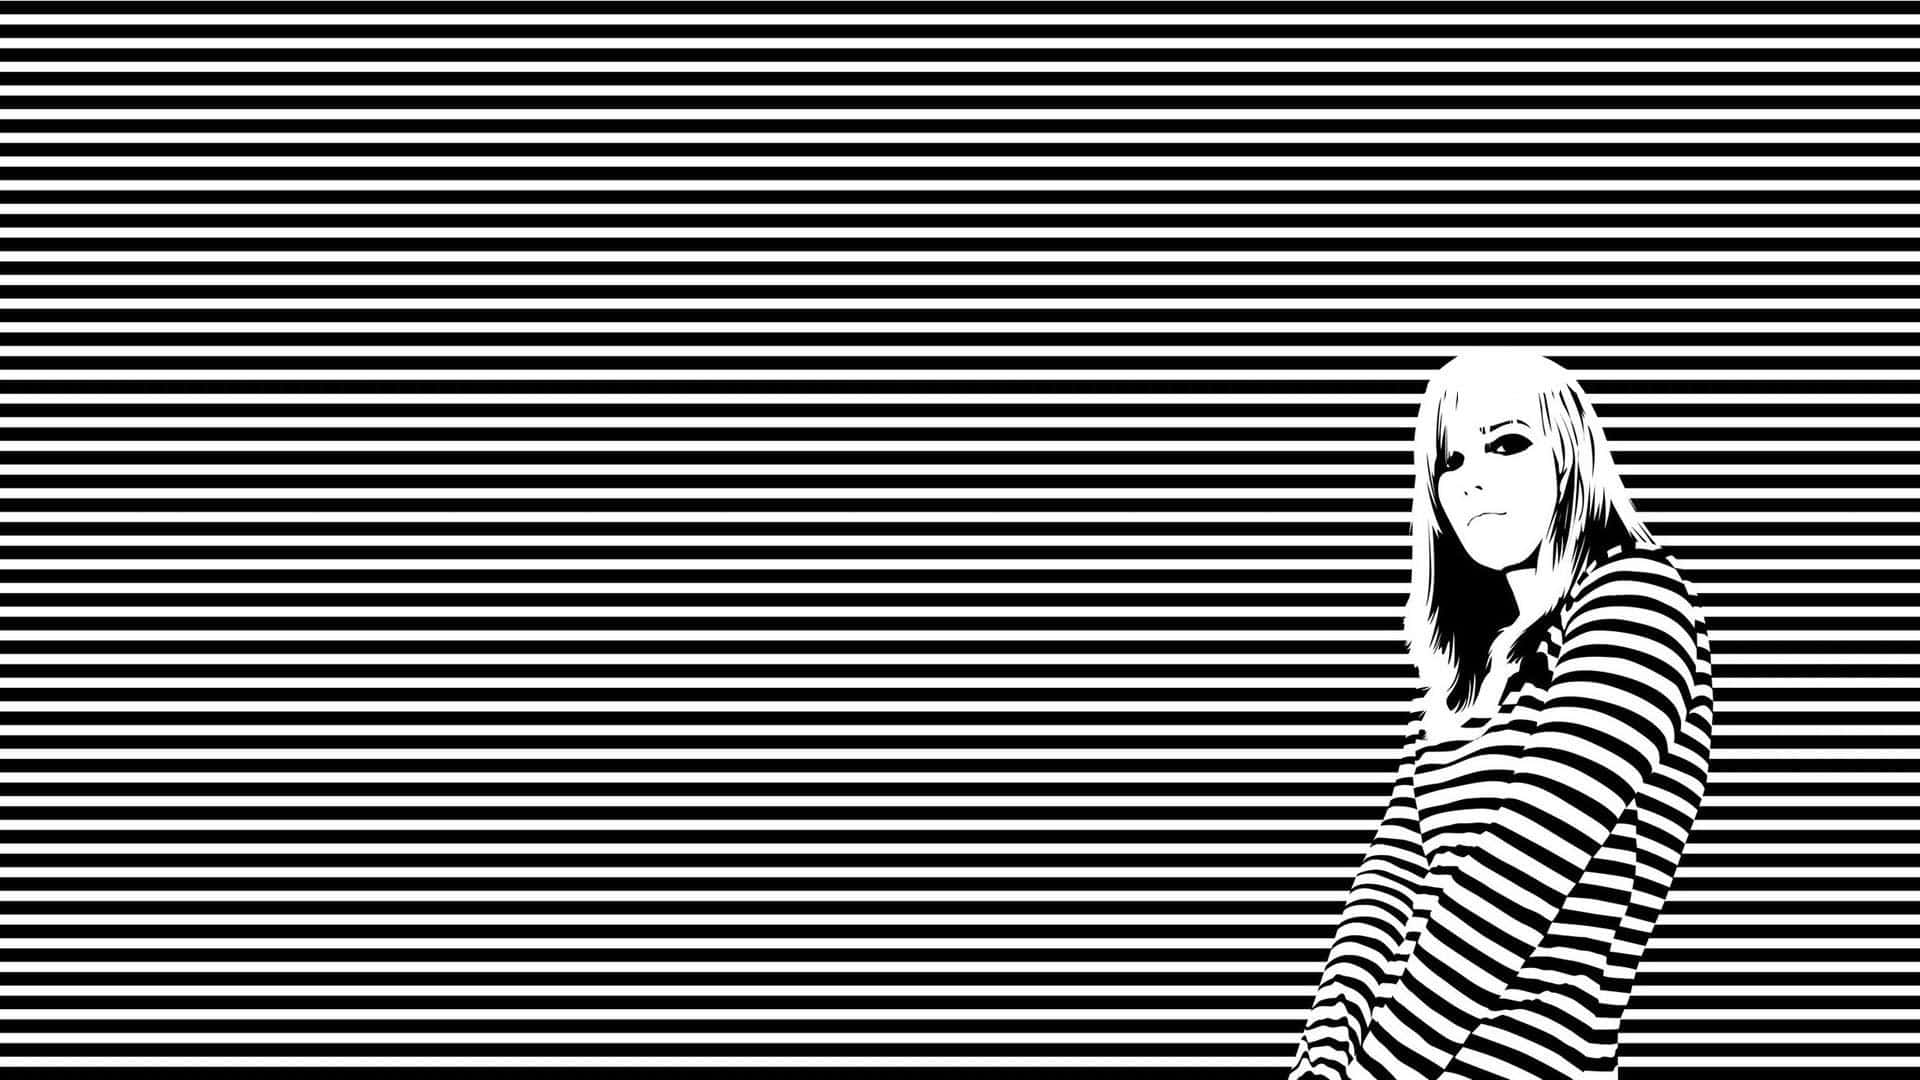 Bold black and white striped design